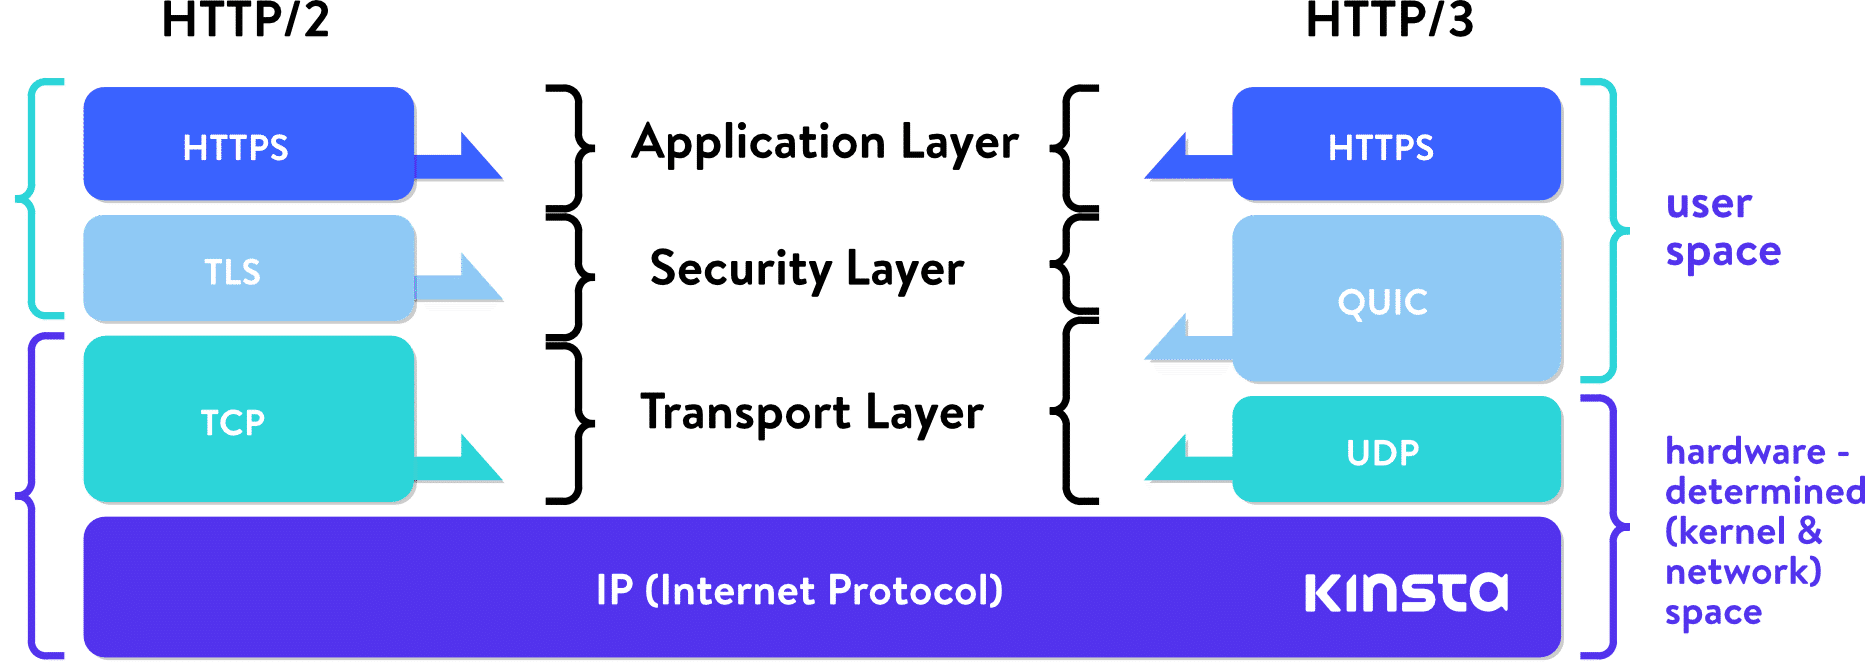 HTTP/2 Stapel vs HTTP/3 Stapel